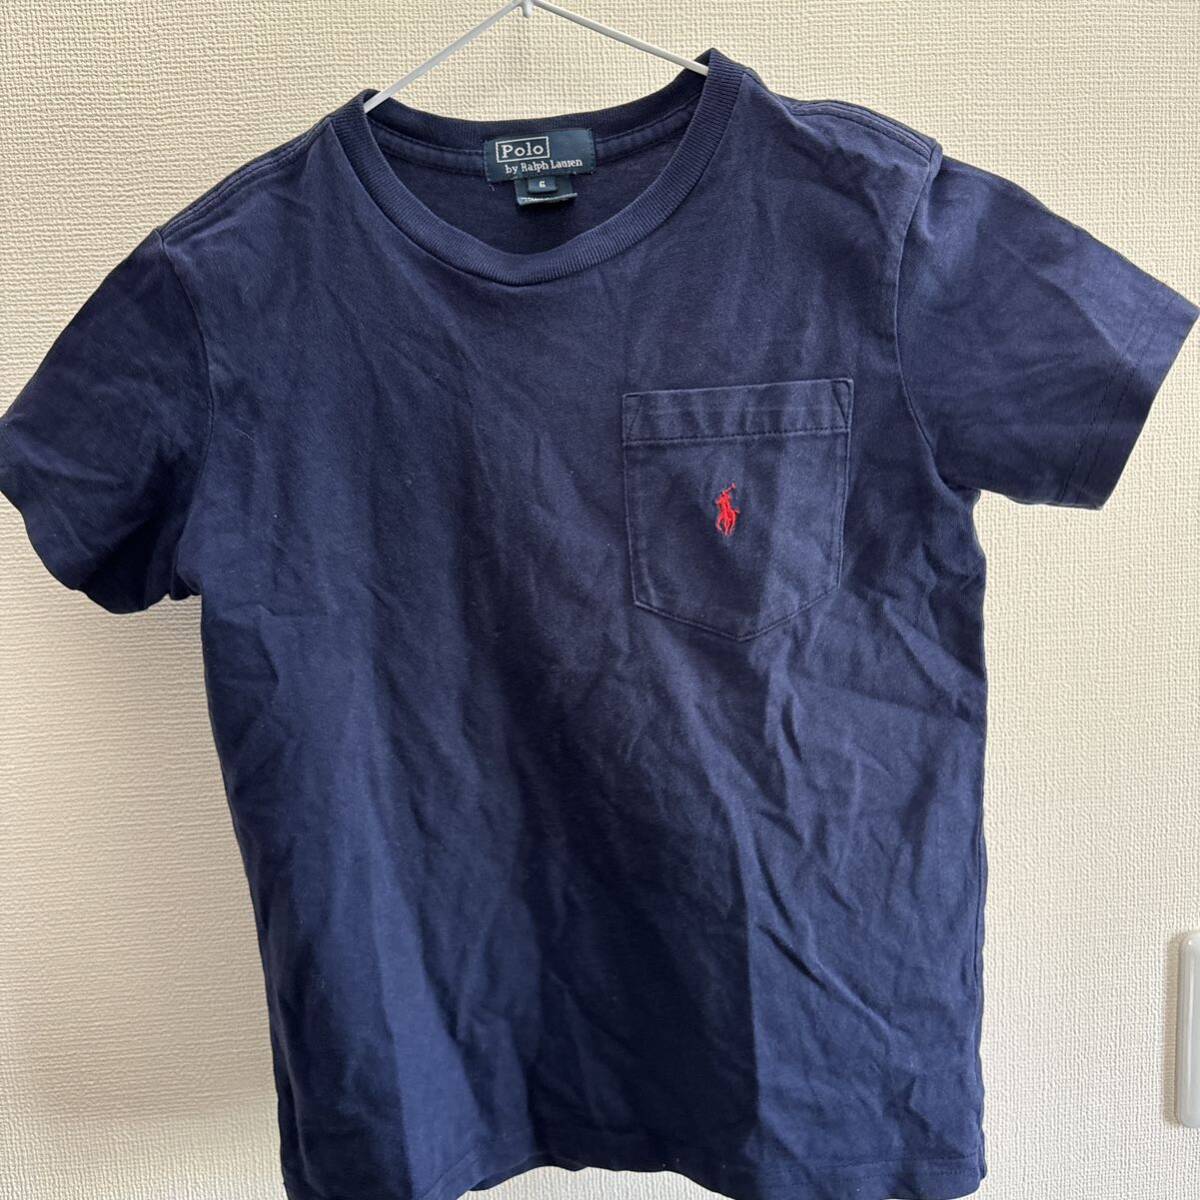  Ralph Lauren T-shirt 6